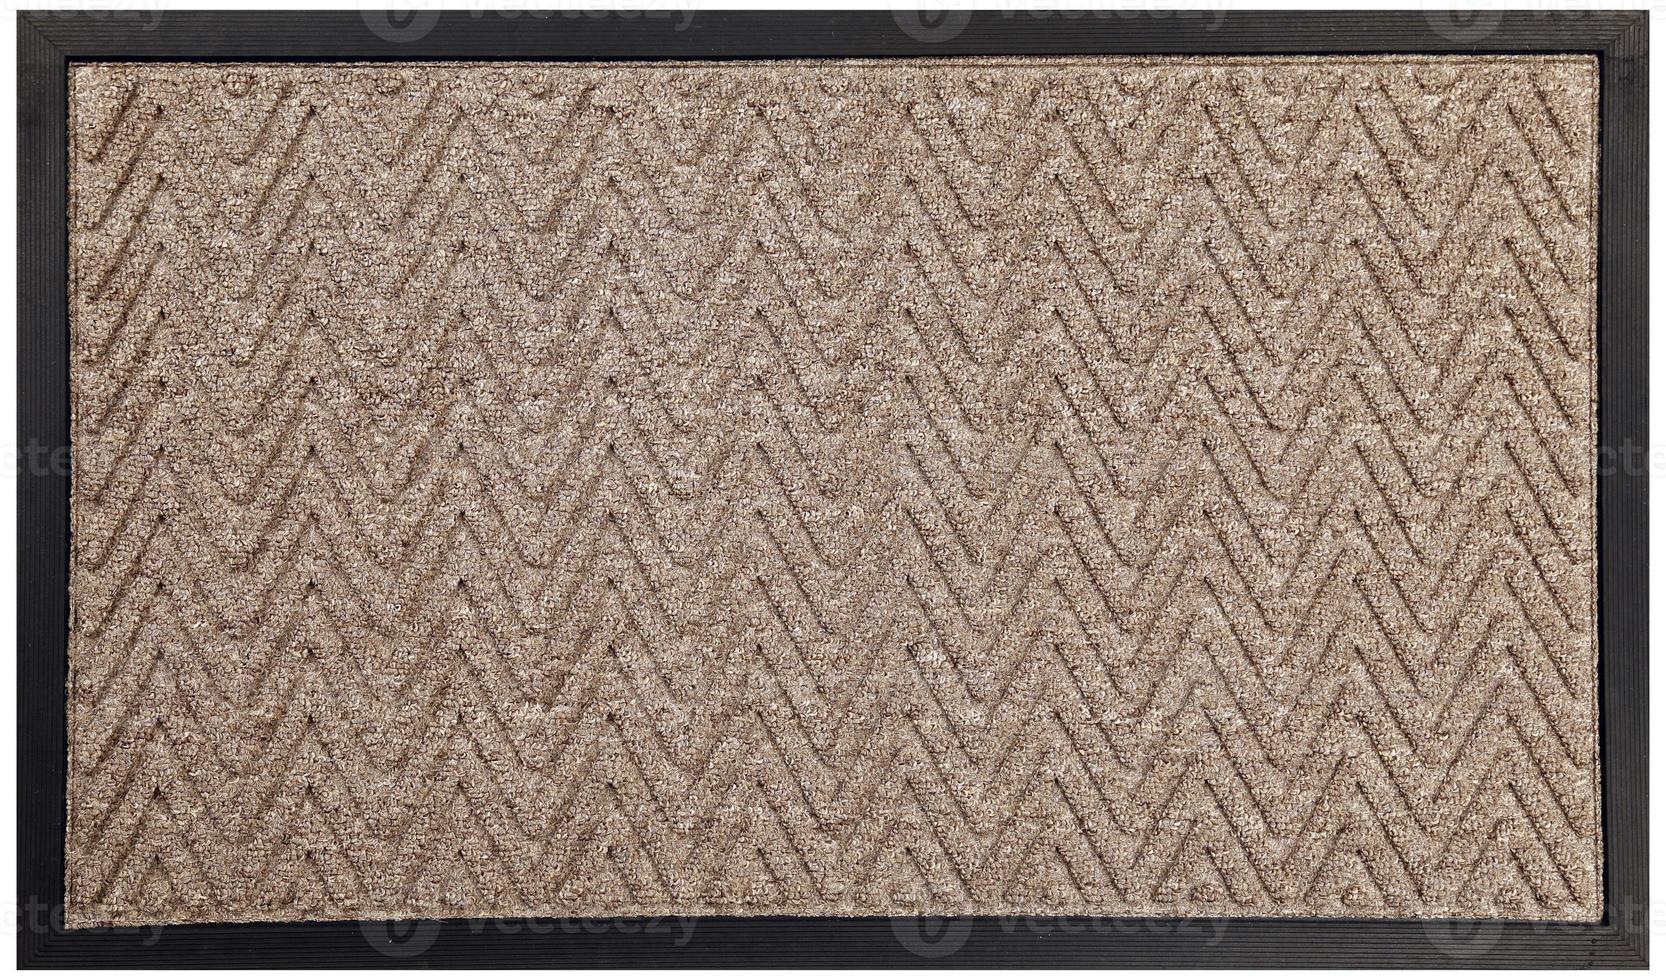 borracha preta bege padrão em ziguezague e capacho de lã foto